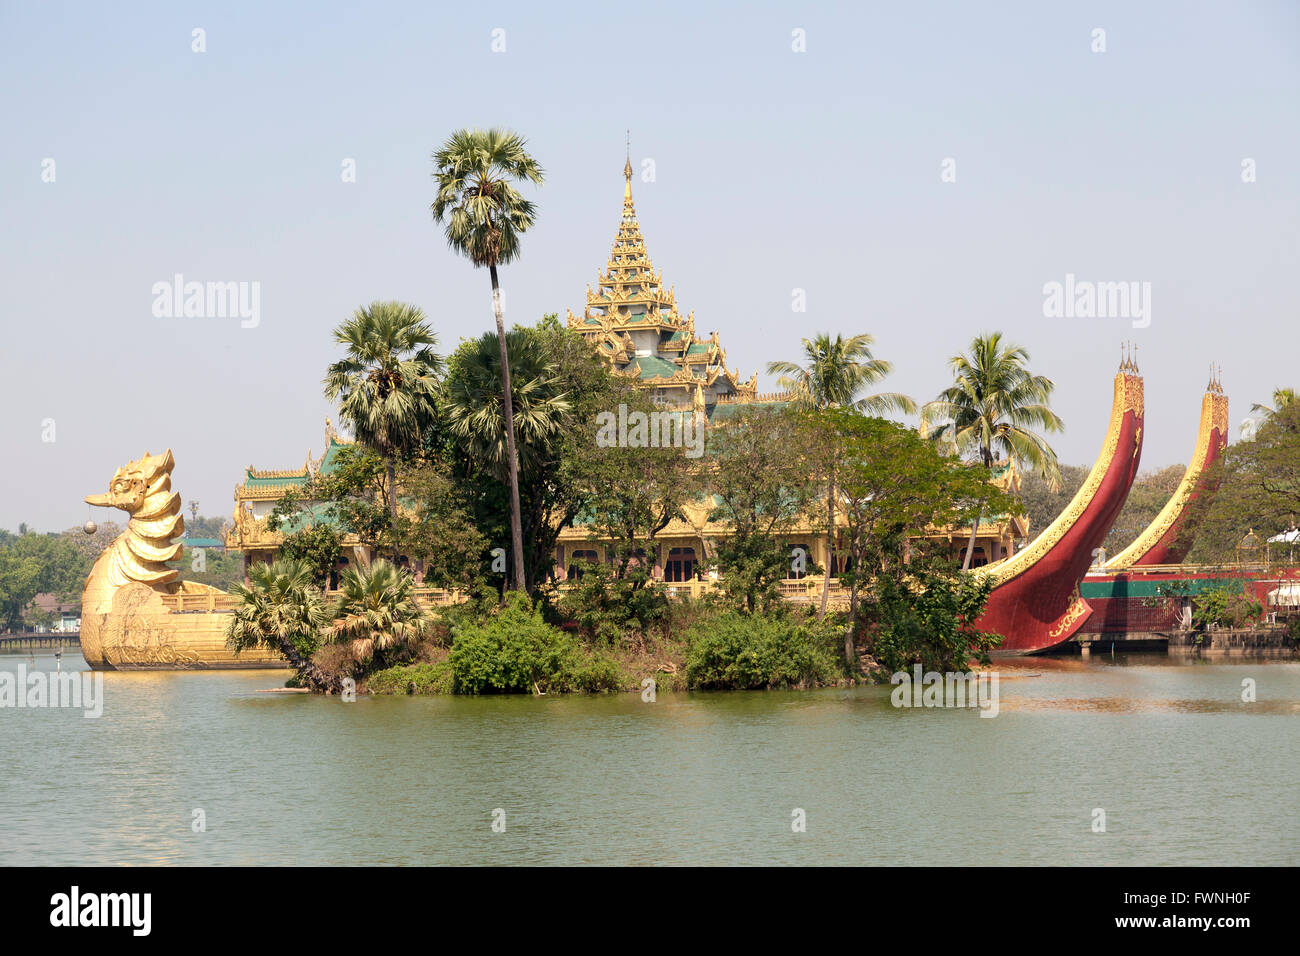 Sur la rive orientale de la Lac Kandawgyi (Yangon), le Crazy Karaweik Hall est la copie de la barge royale. Banque D'Images